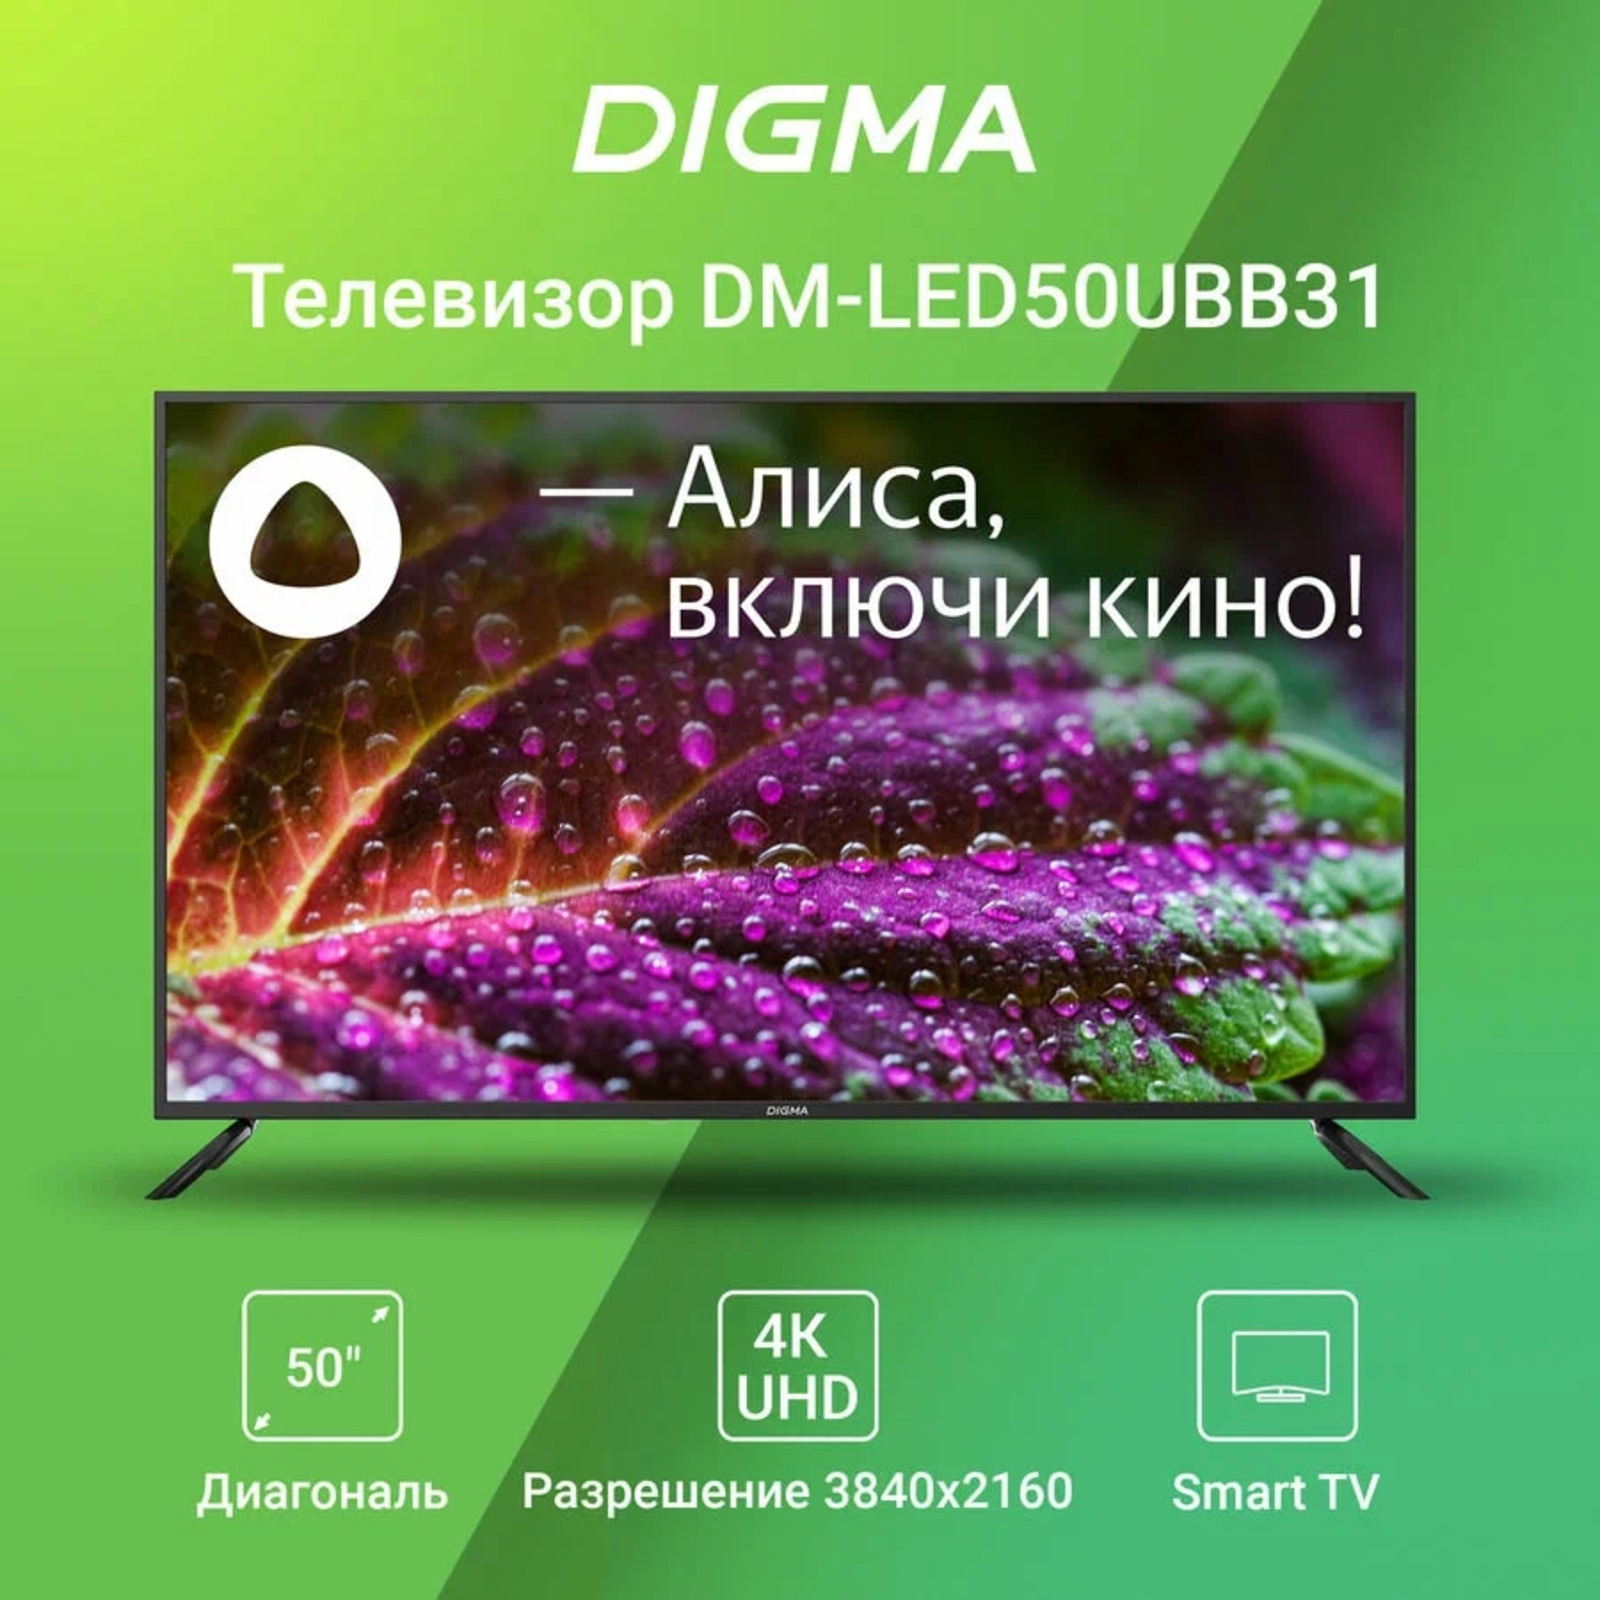 DM-led55ubb31. Телевизор Дигма 55 дюймов. Digma DM-led55ubb31 55" Алиса.